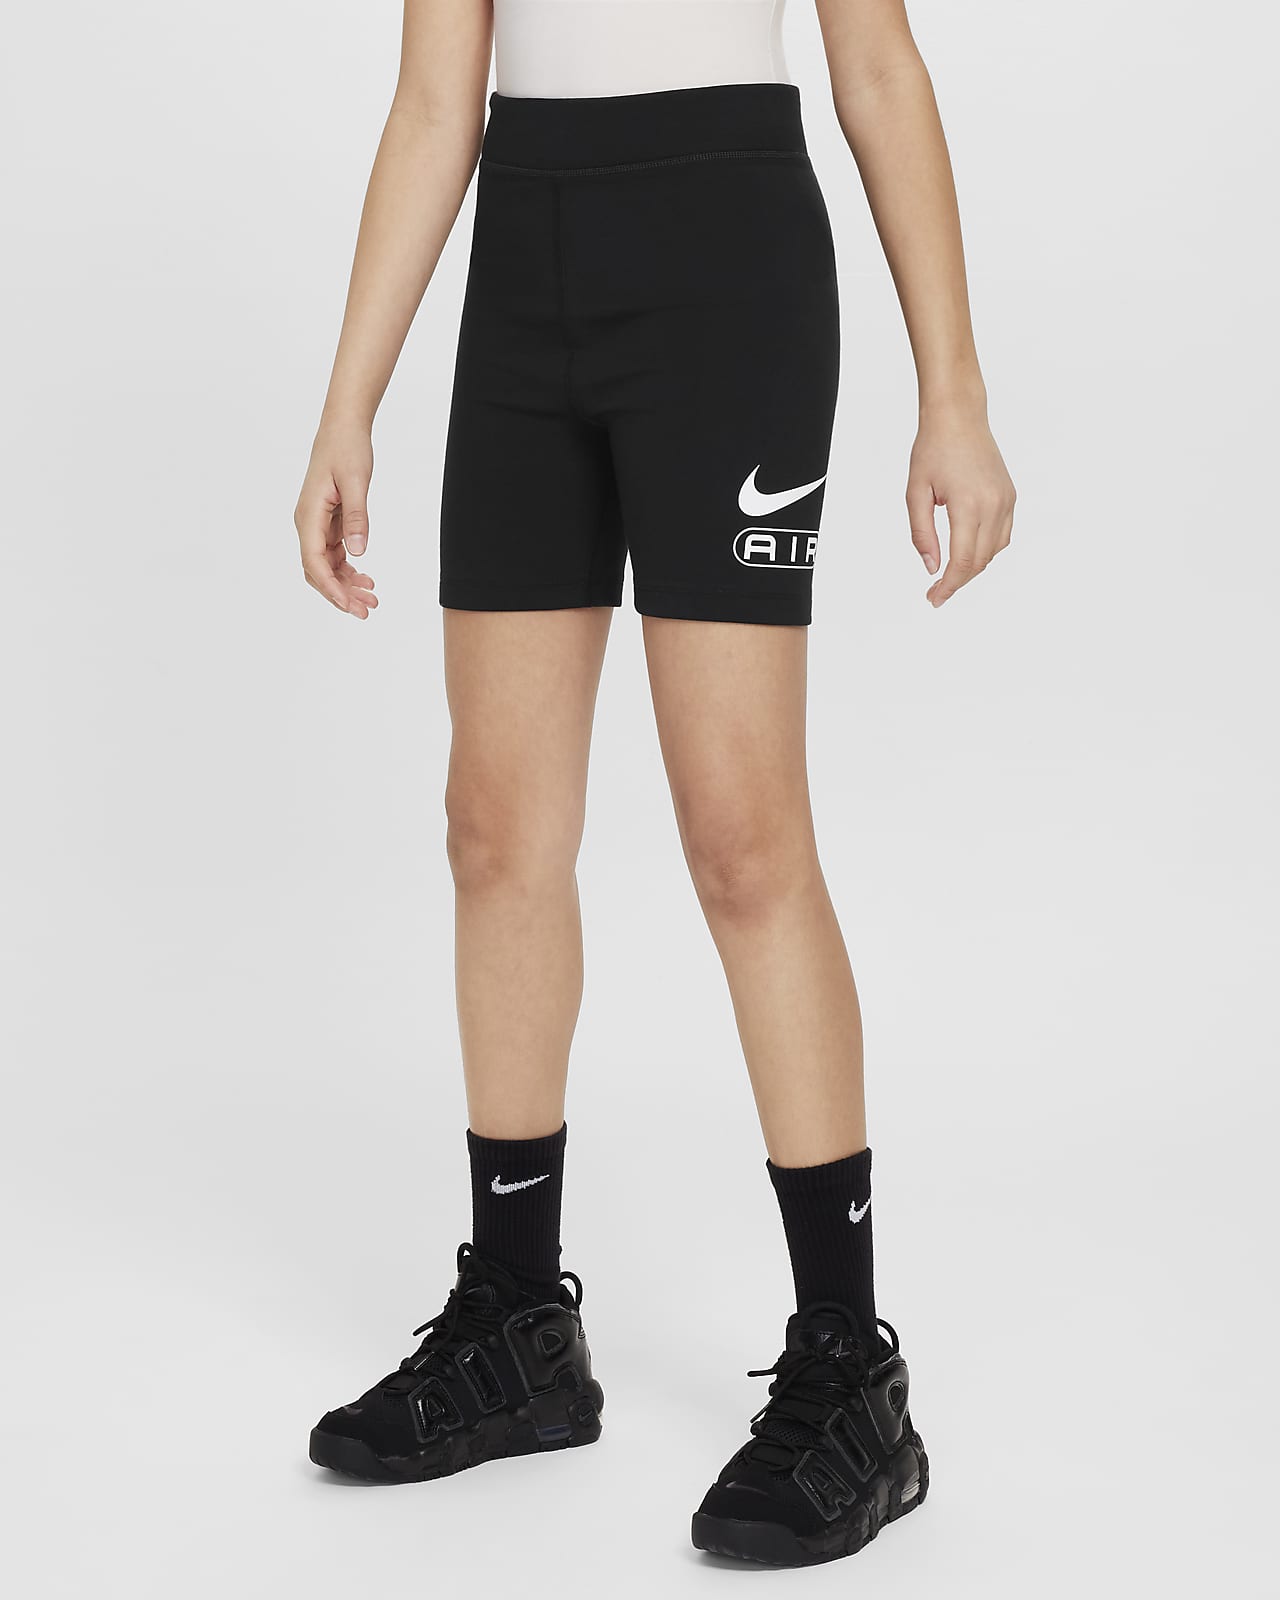 Cykelshorts Nike Air för tjejer